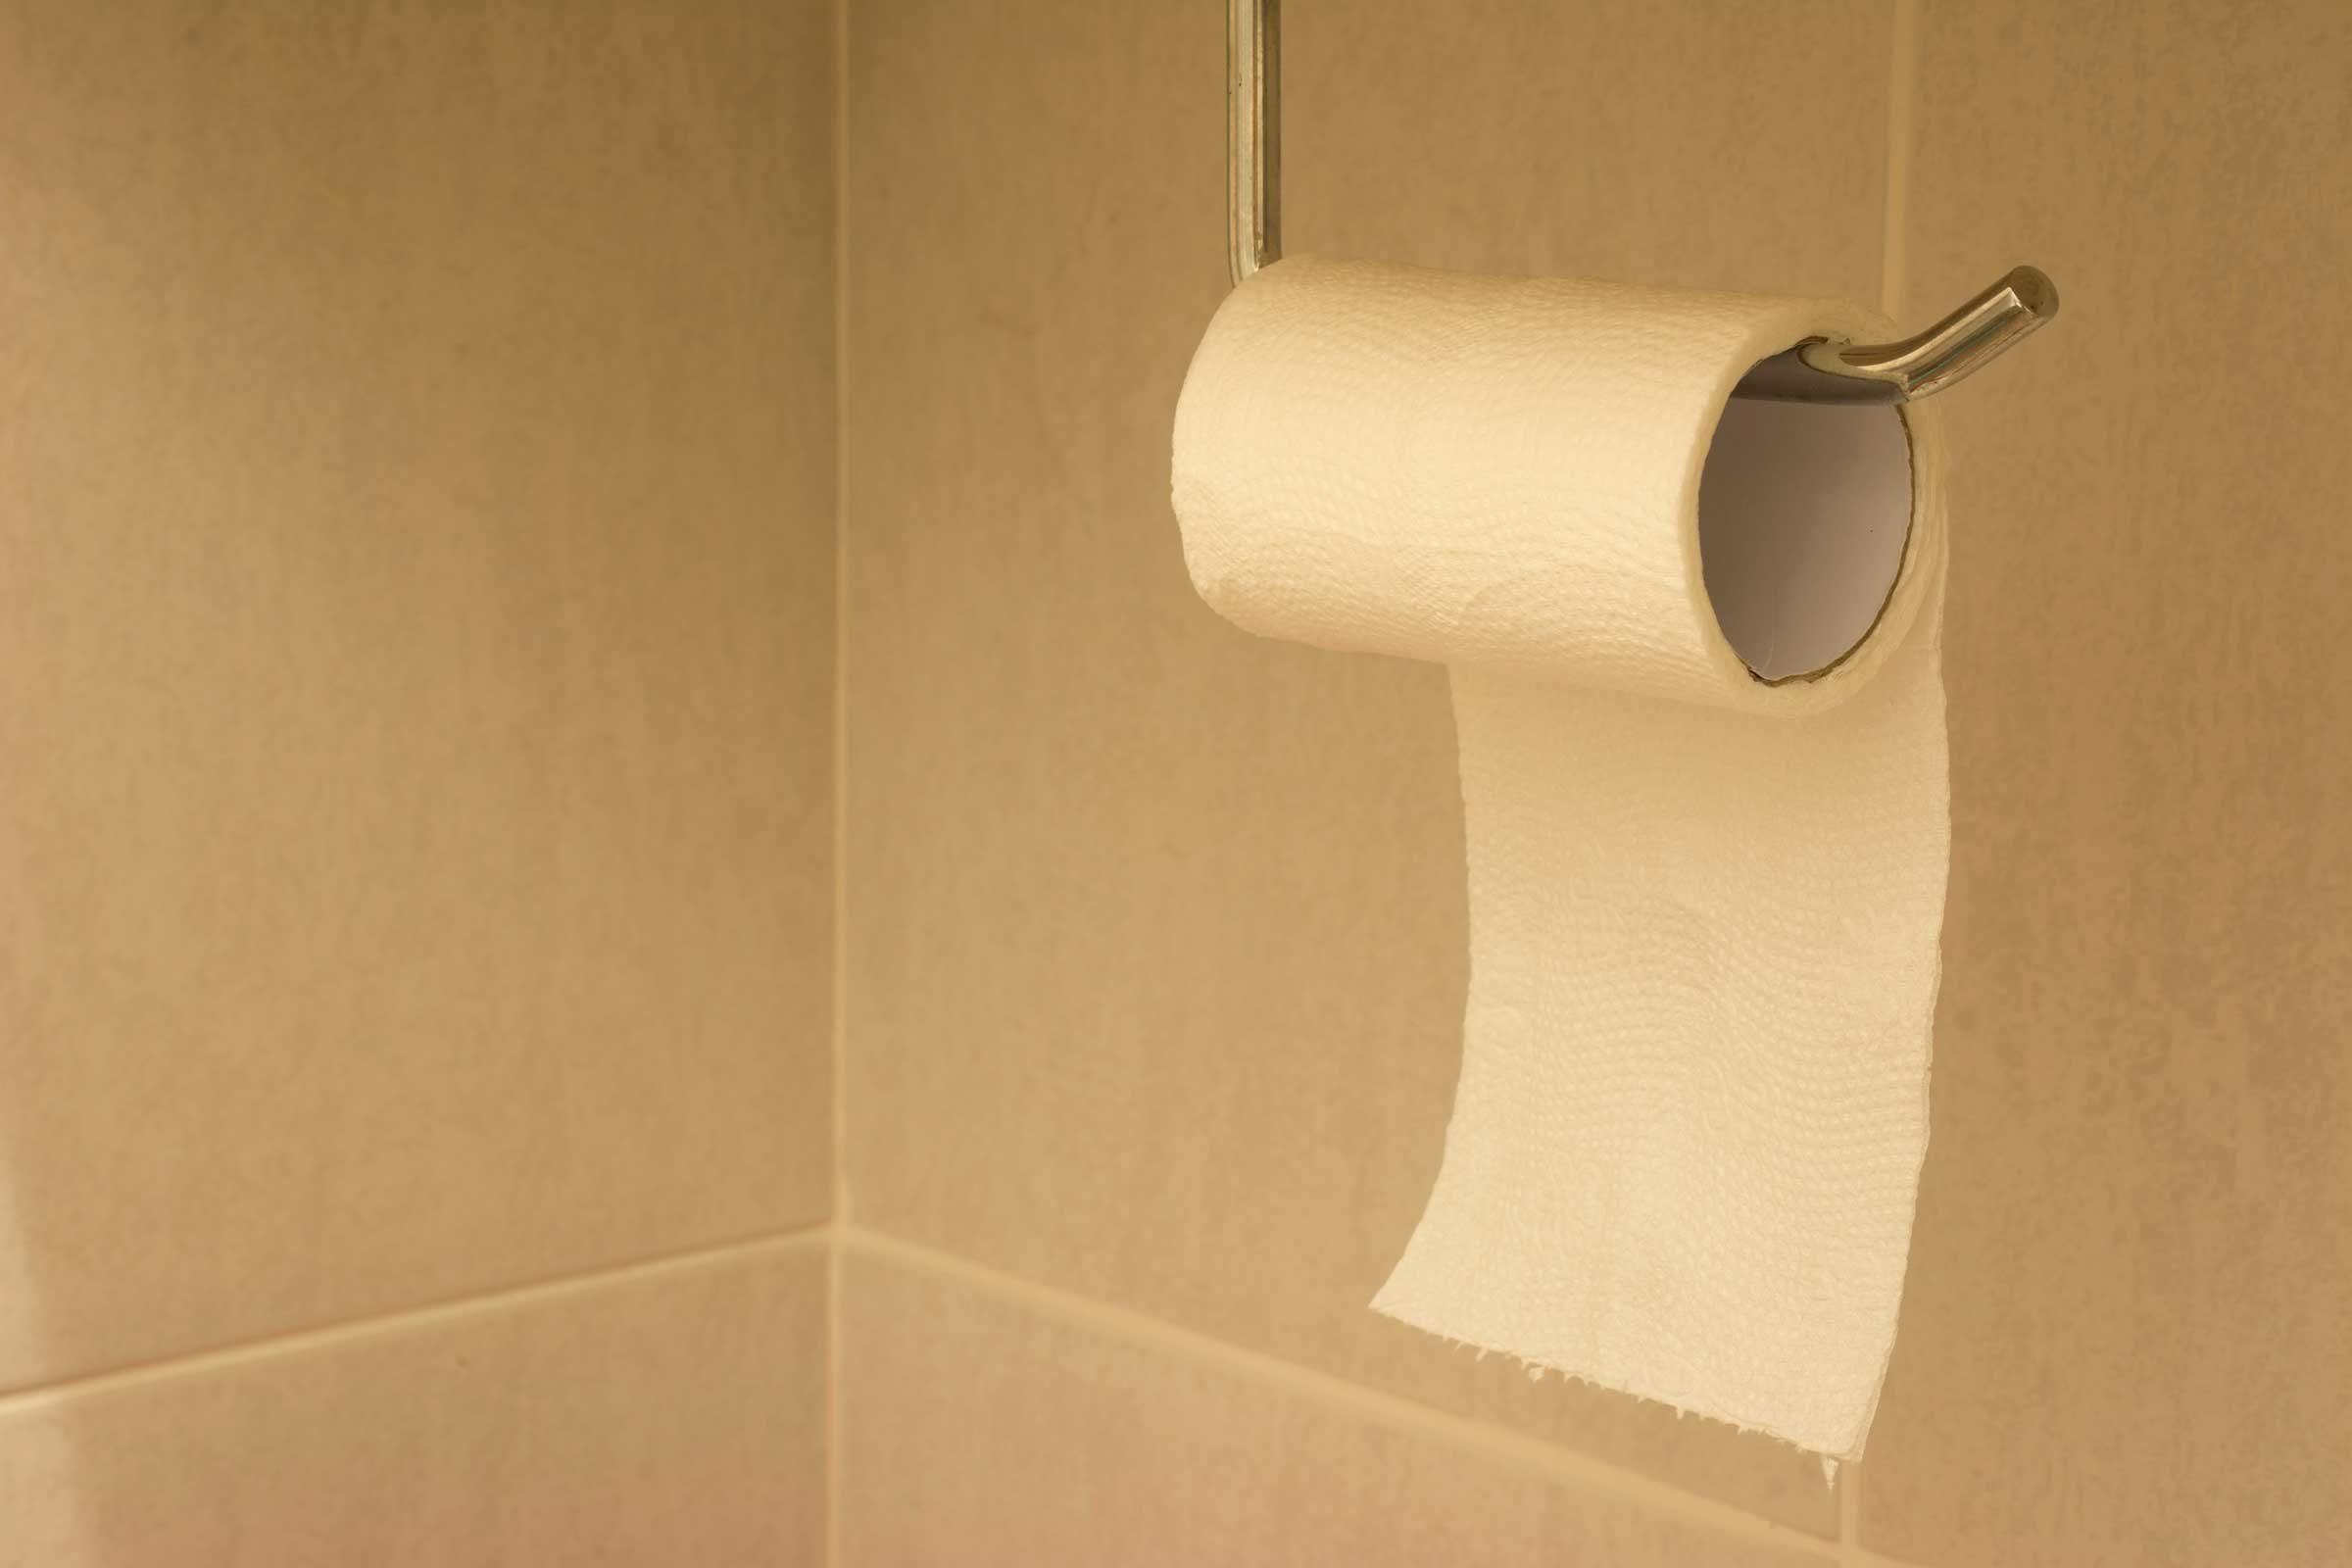 Toilet paper up anus